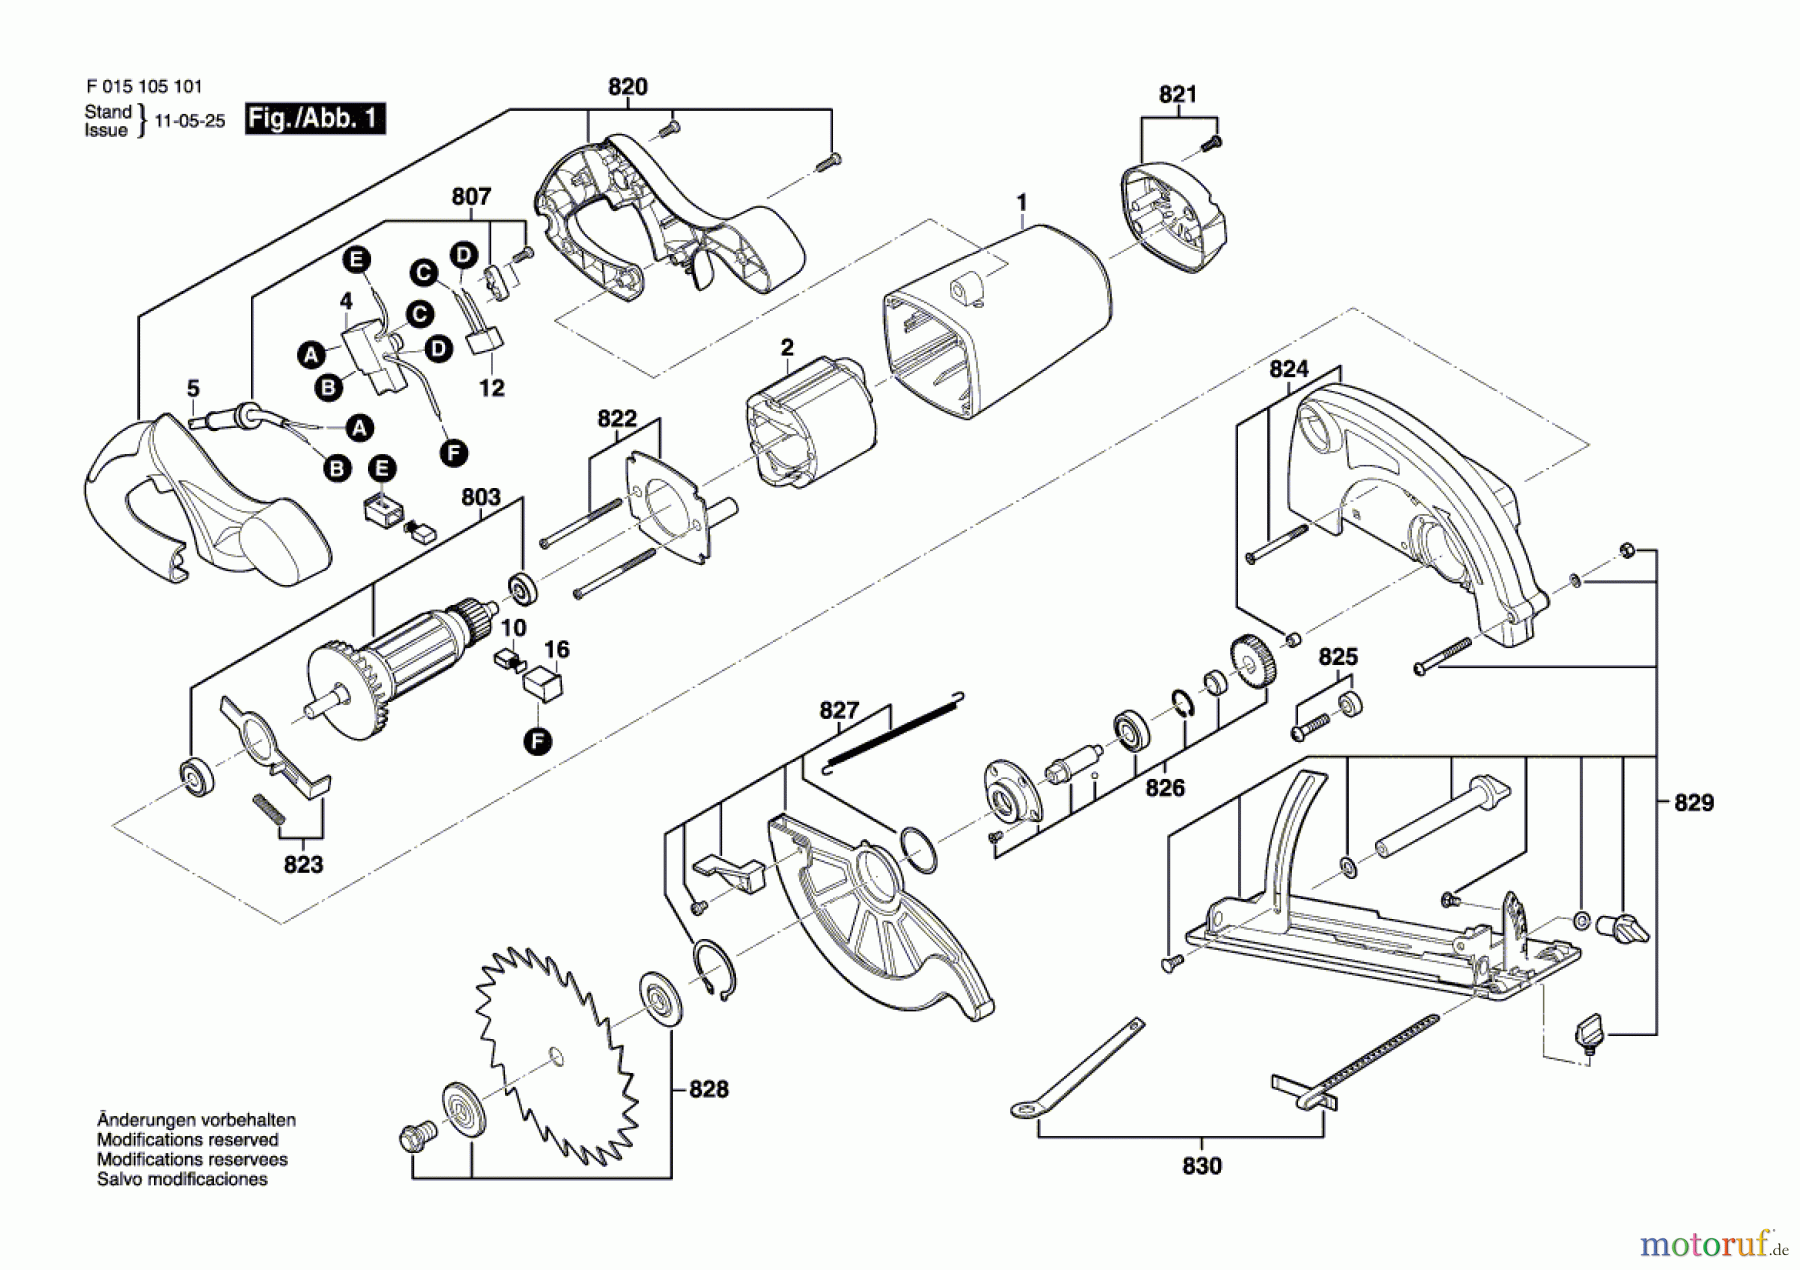  Bosch Werkzeug Handkreissäge 5065 Seite 1